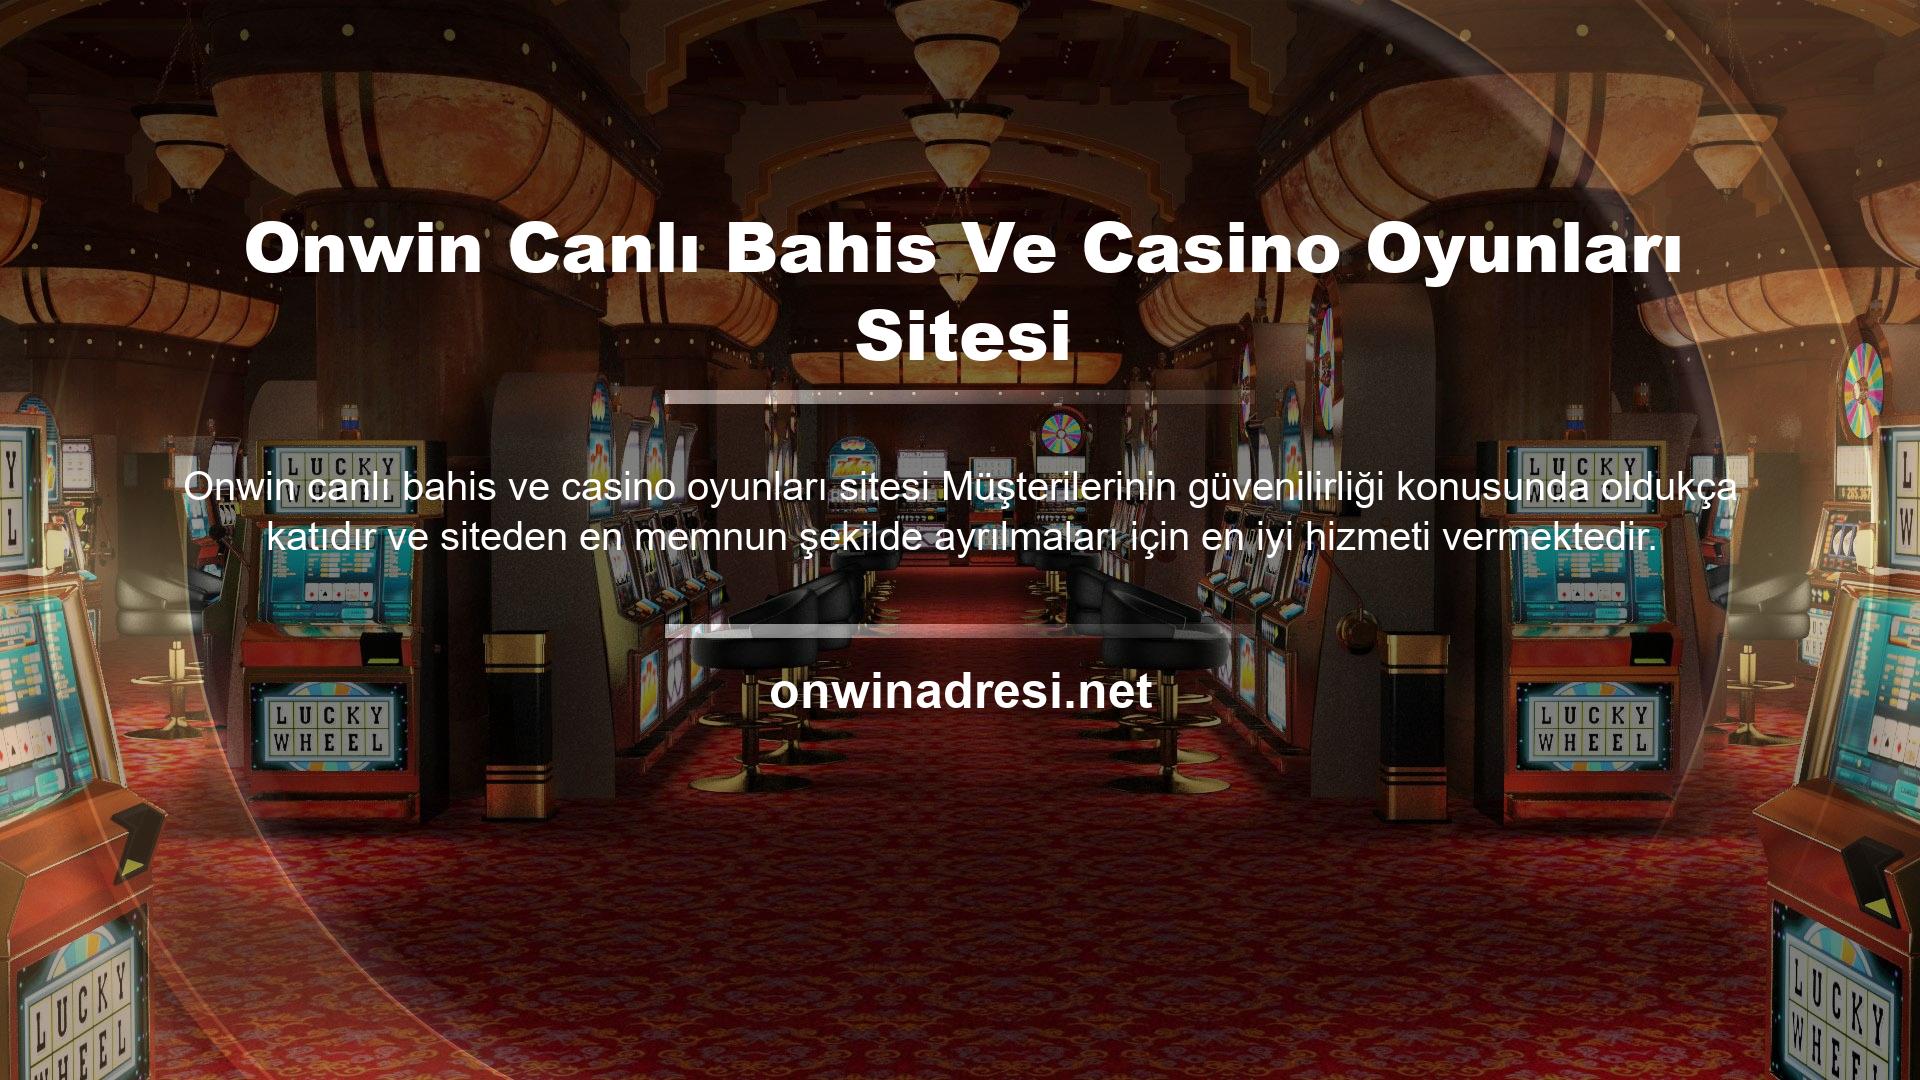 Onwin Canlı Bahis Ve Casino Oyunları Sitesi